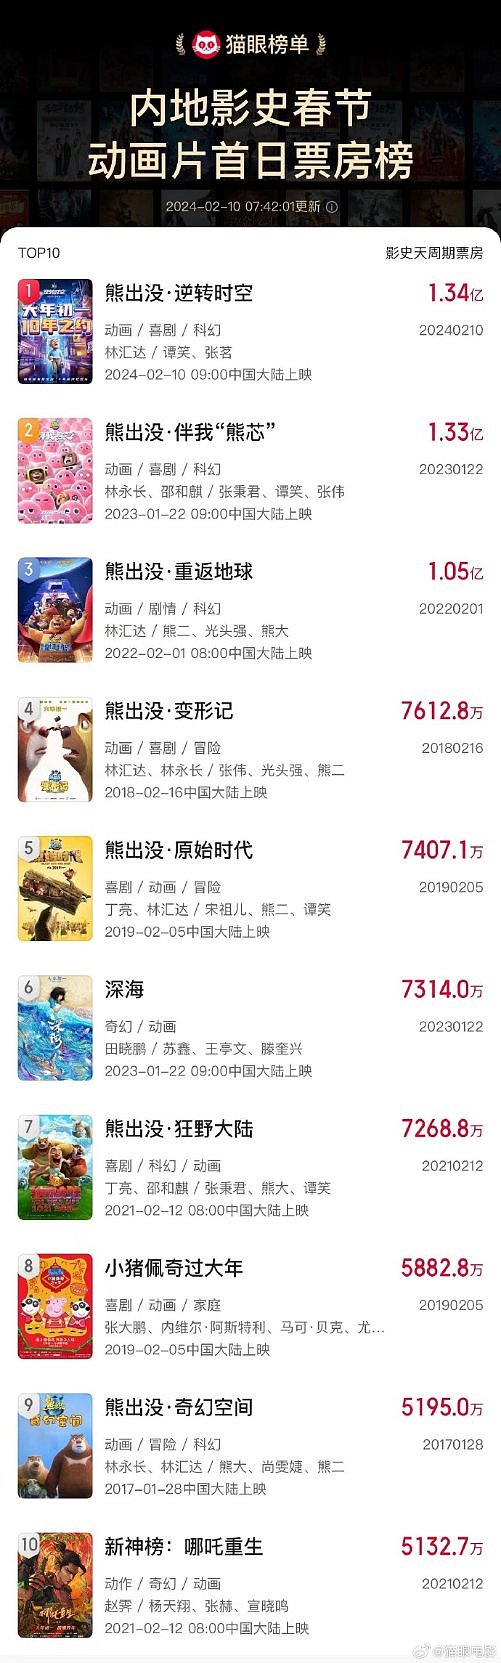 《熊出没·逆转时空》票房破1.34亿 成春节档动画首日票房冠军 - 1